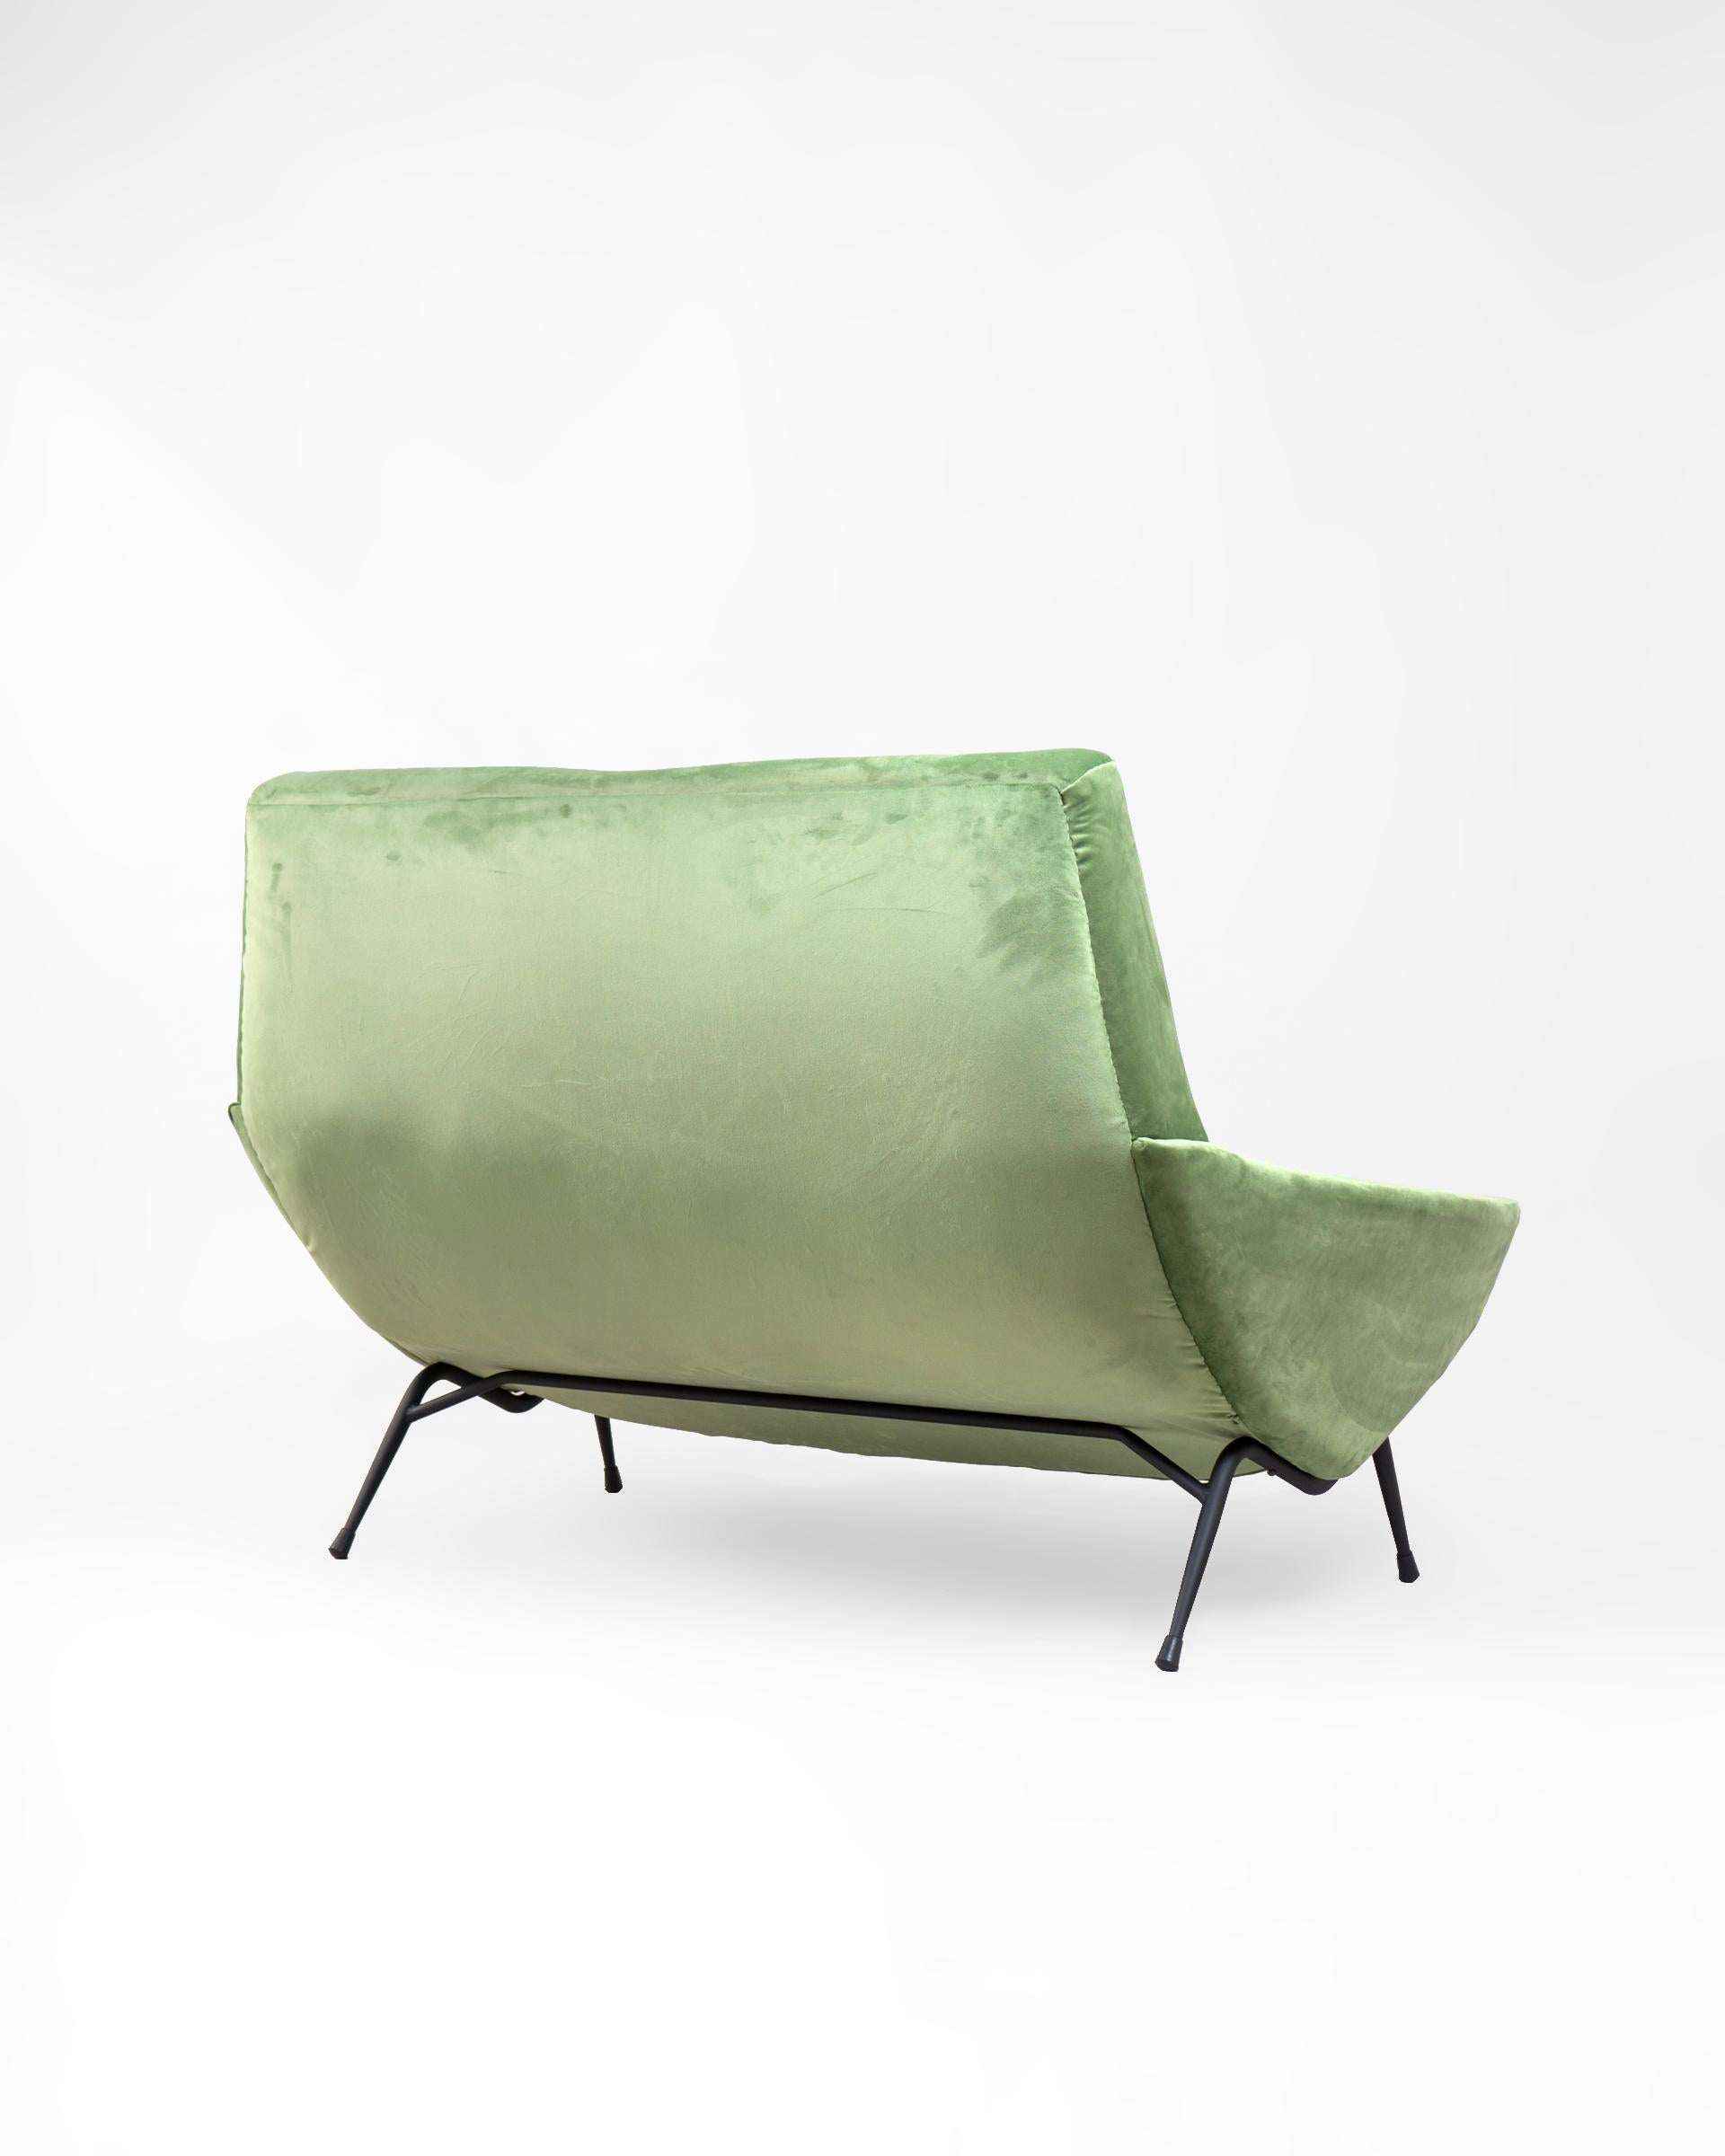 French Mid Century Lounge Sofa in Re-Upholstered Green Velvet by Guy Besnard, 1960's